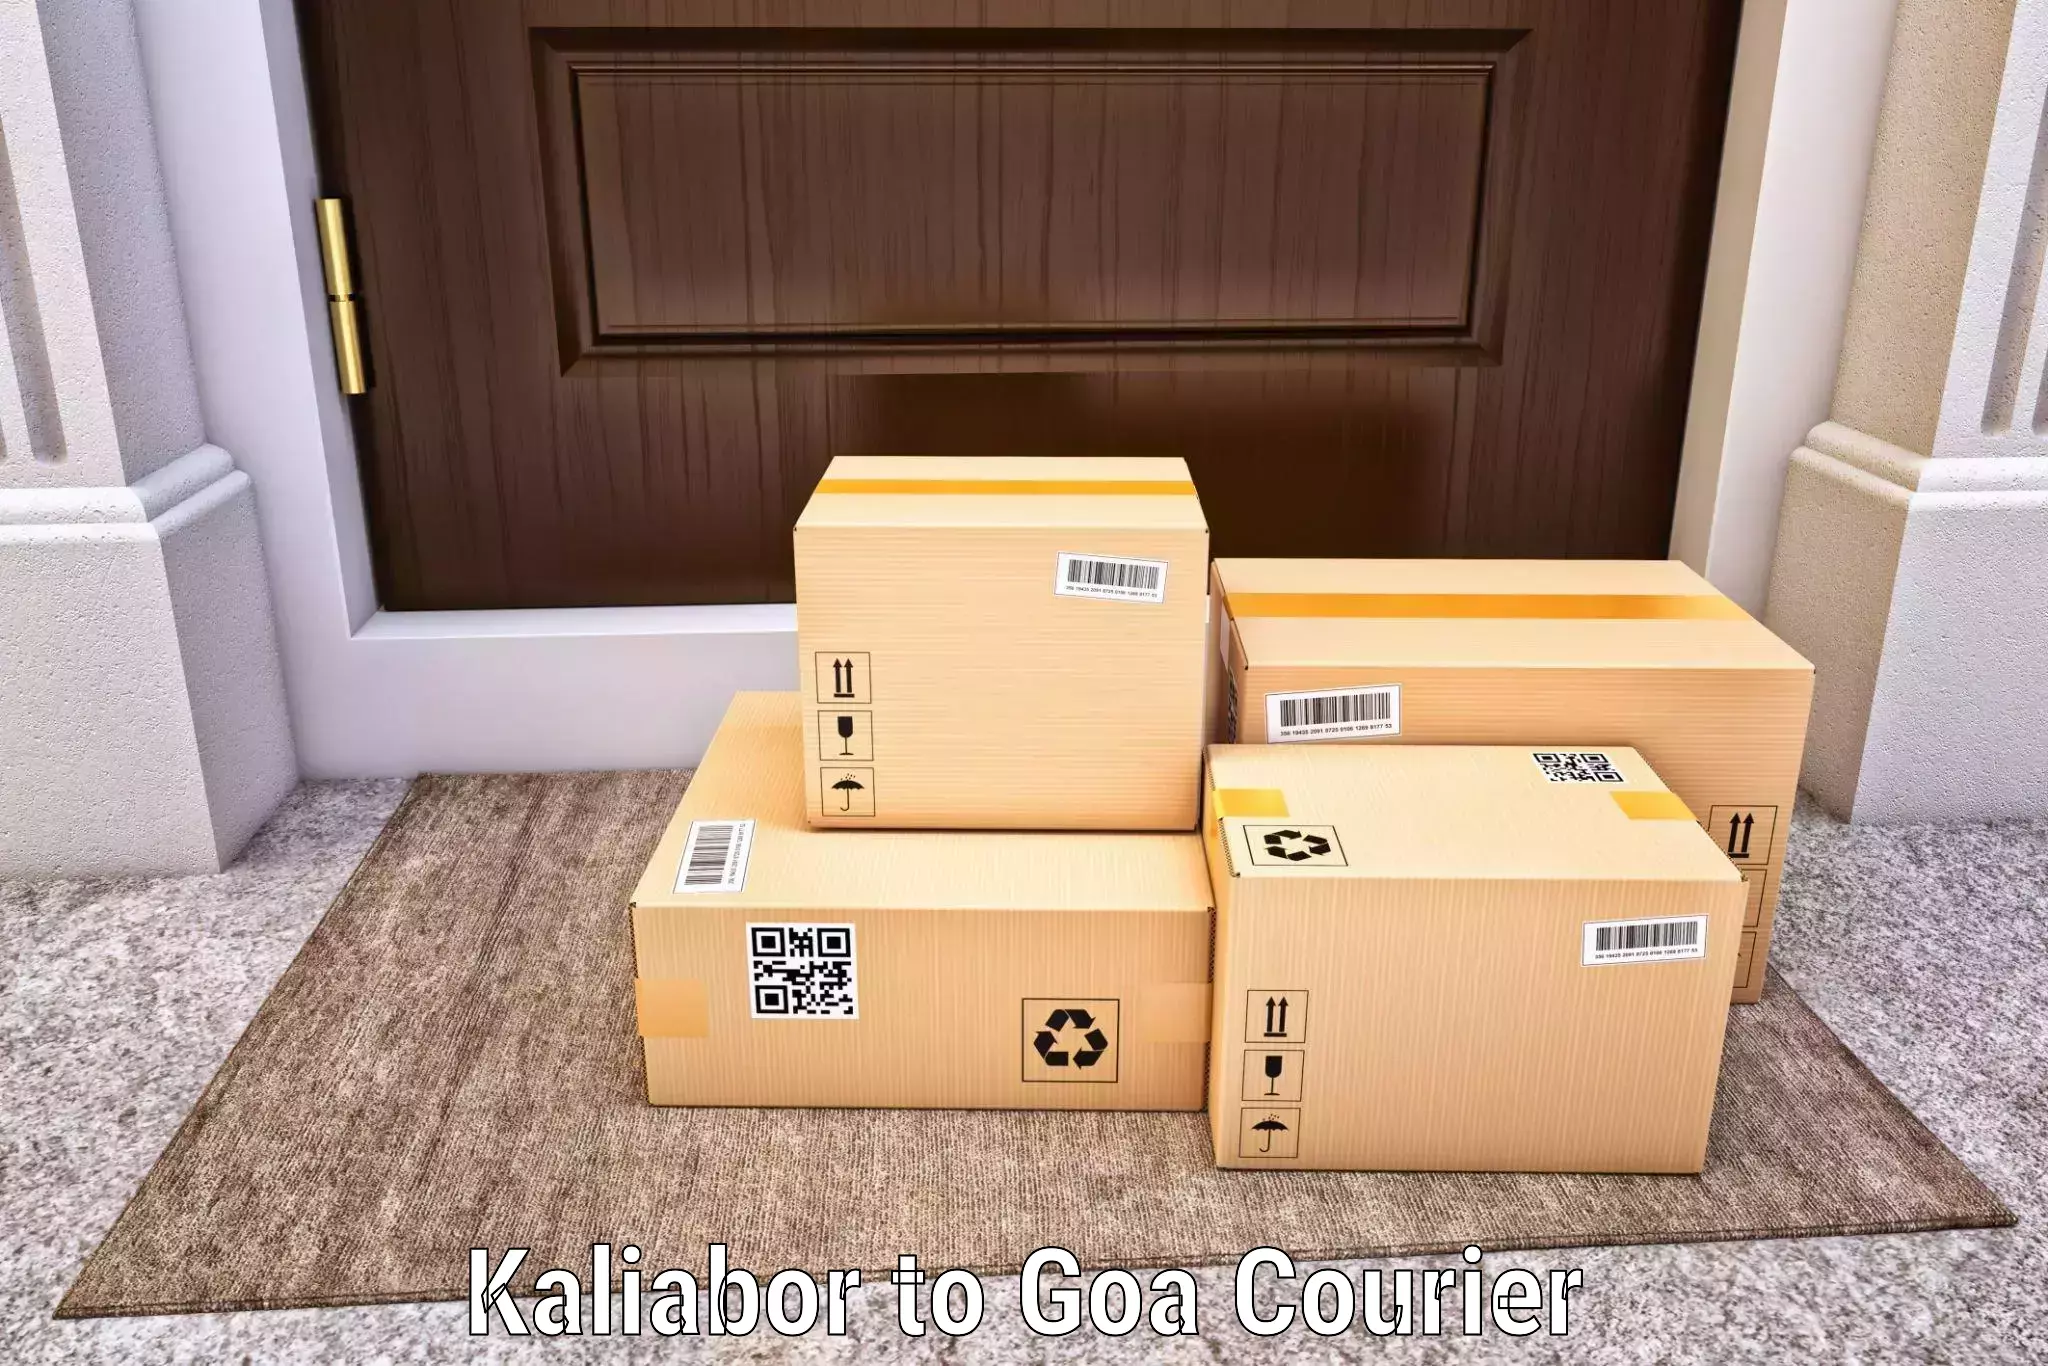 Optimized delivery routes Kaliabor to Goa University